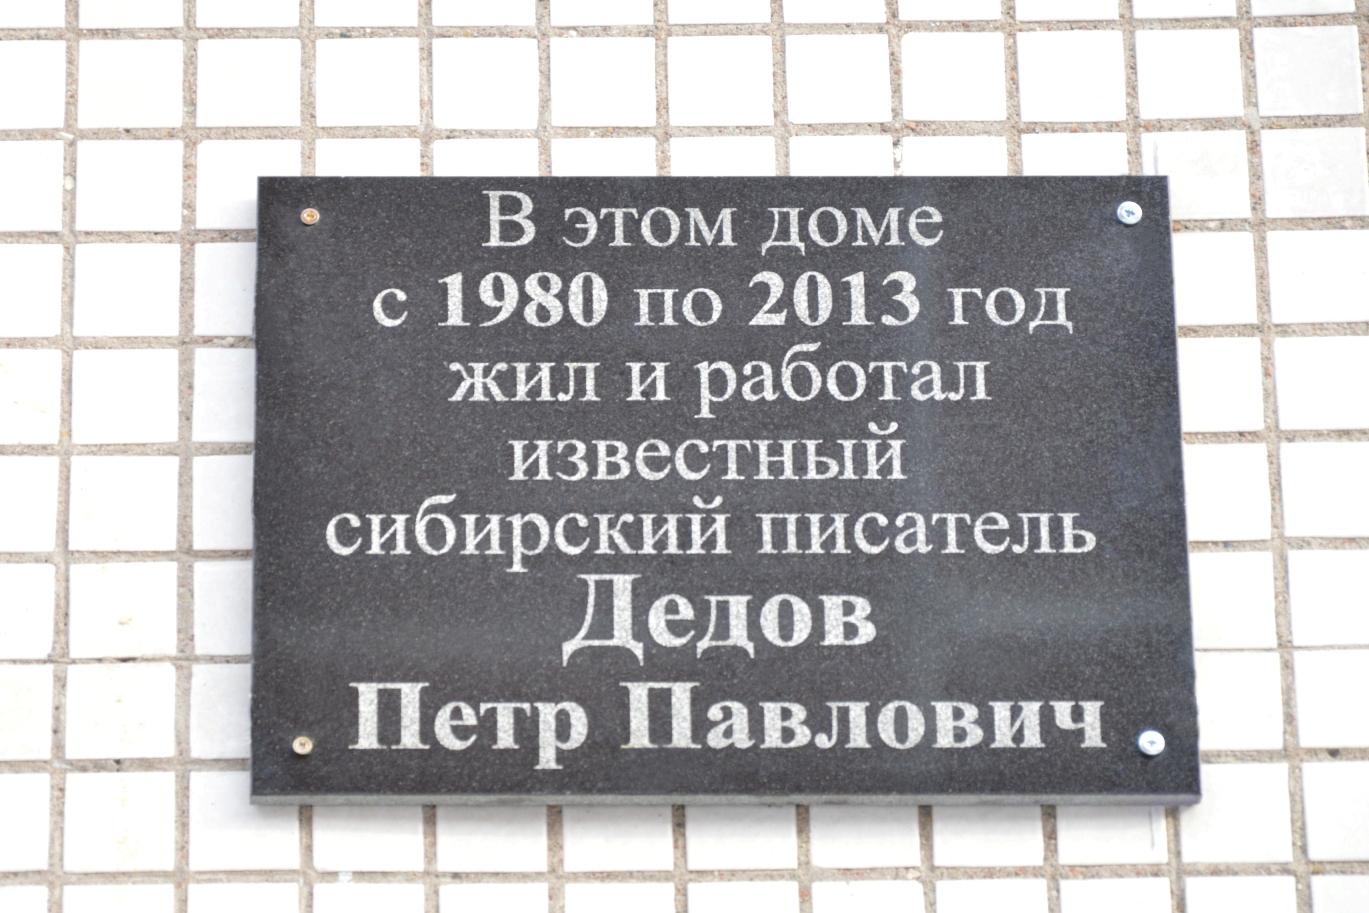 Мемориальная доска, посвященная Петру Дедову